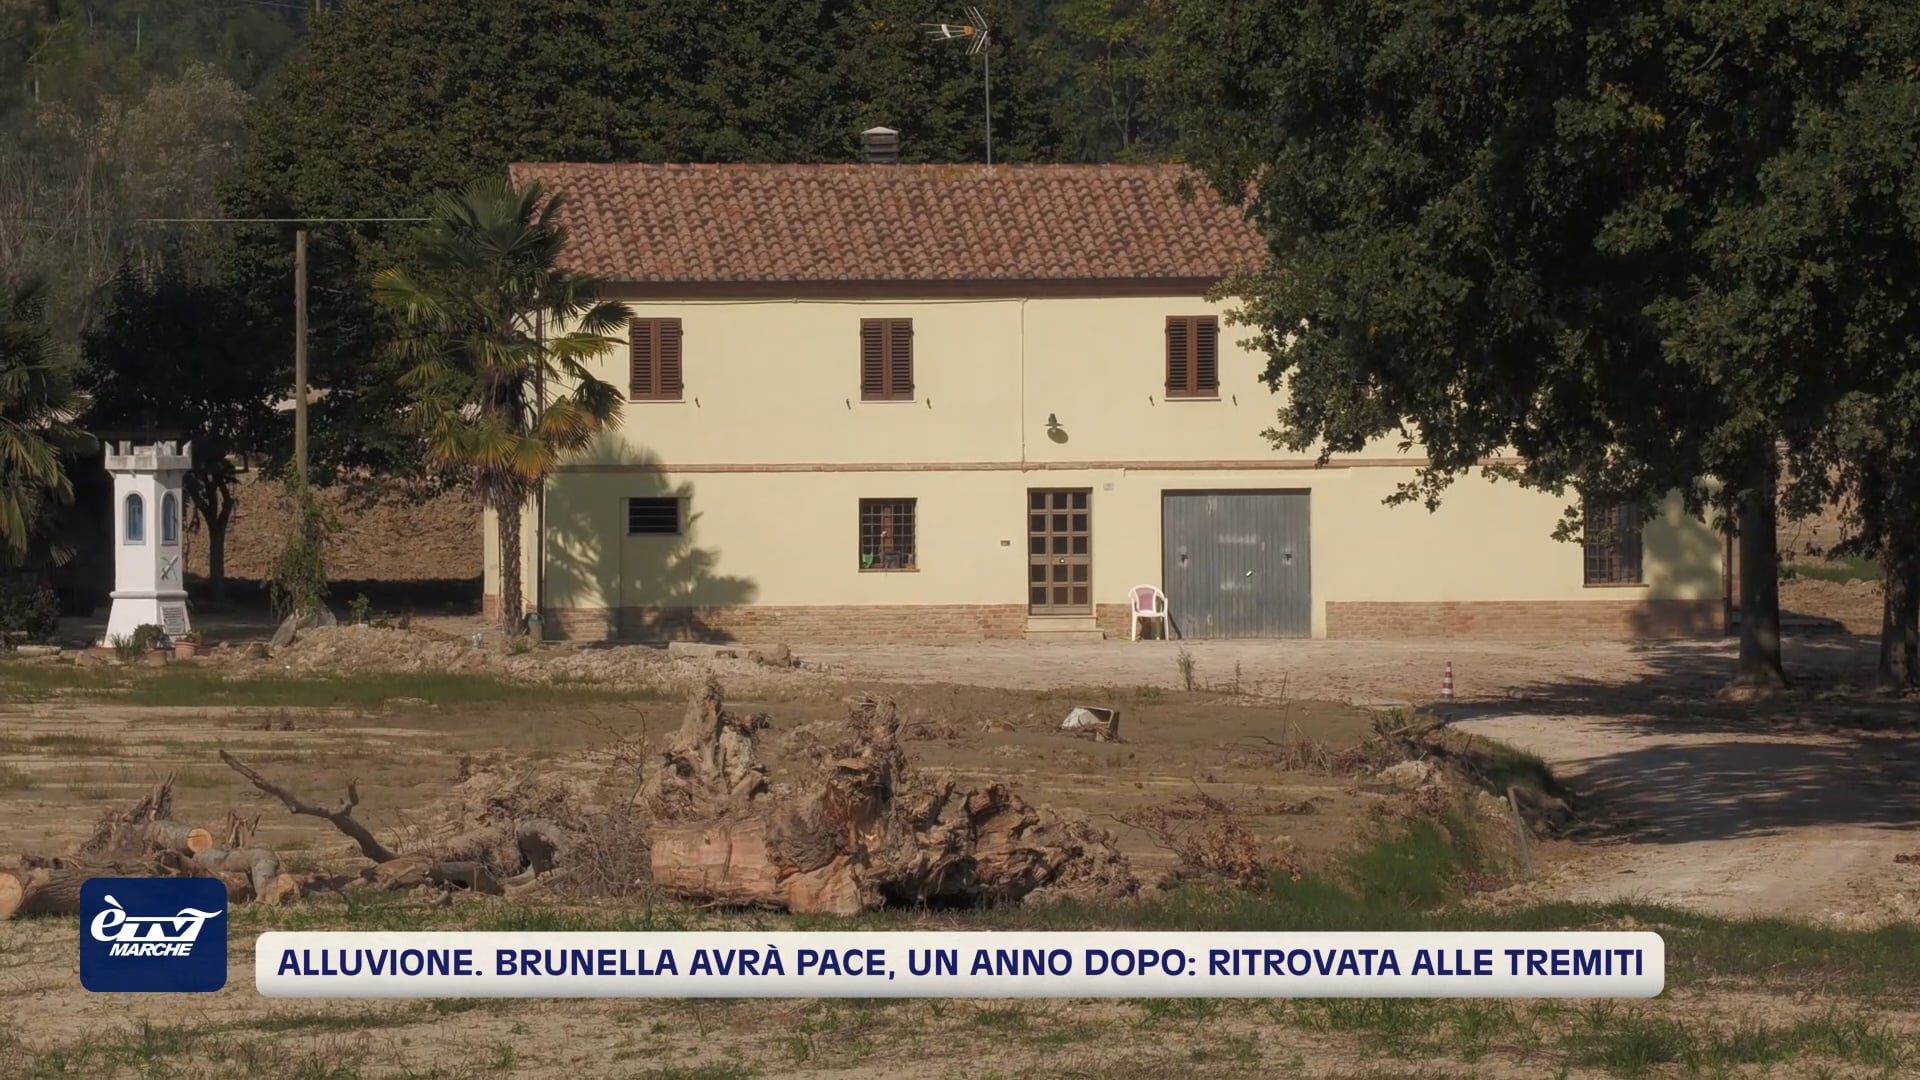 Alluvione. Brunella avrà pace, un anno dopo: ritrovata alle Tremiti - VIDEO